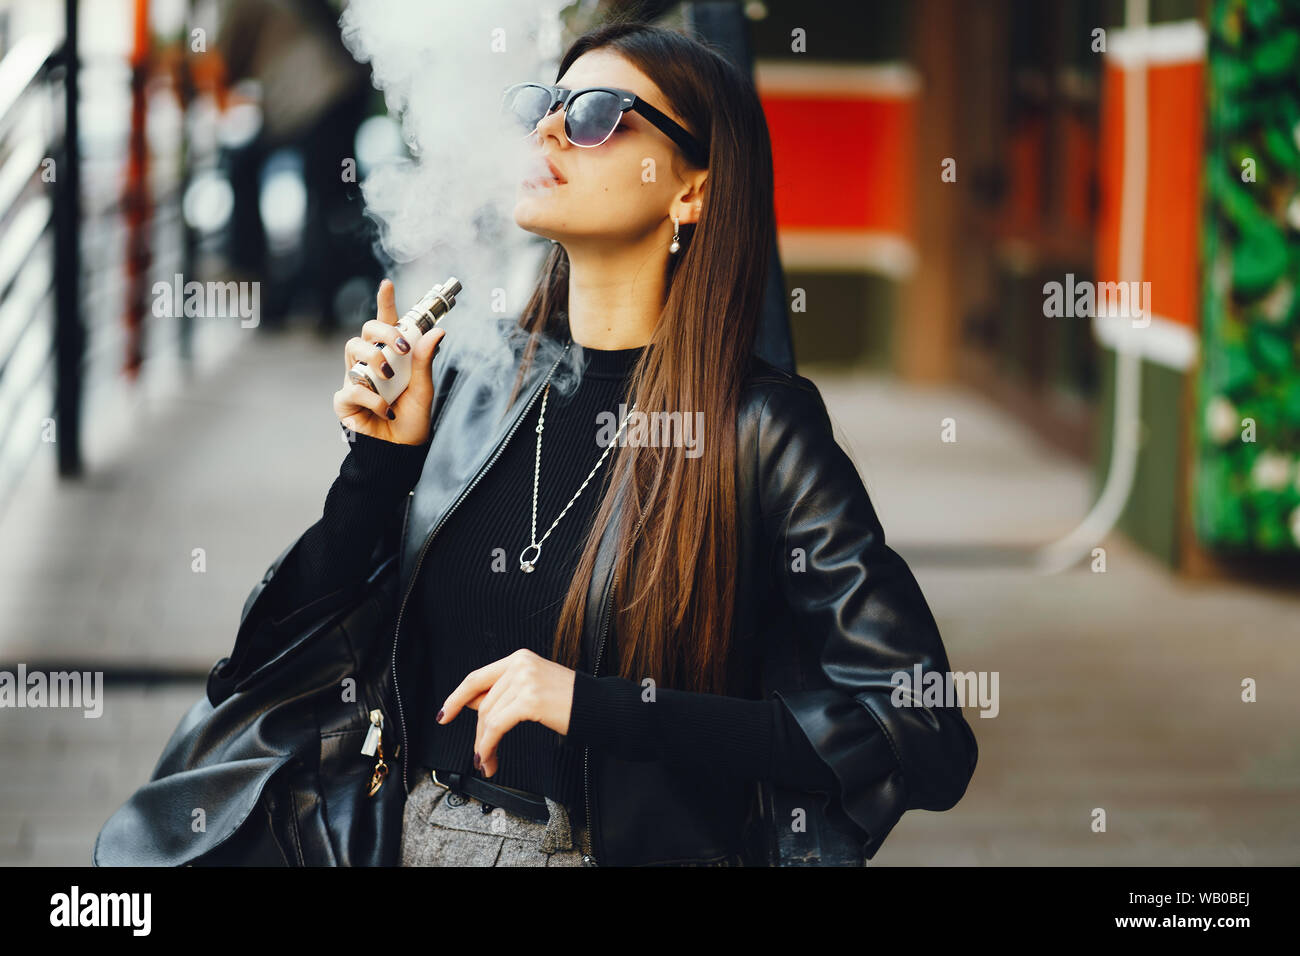 voyeurs of women smoking